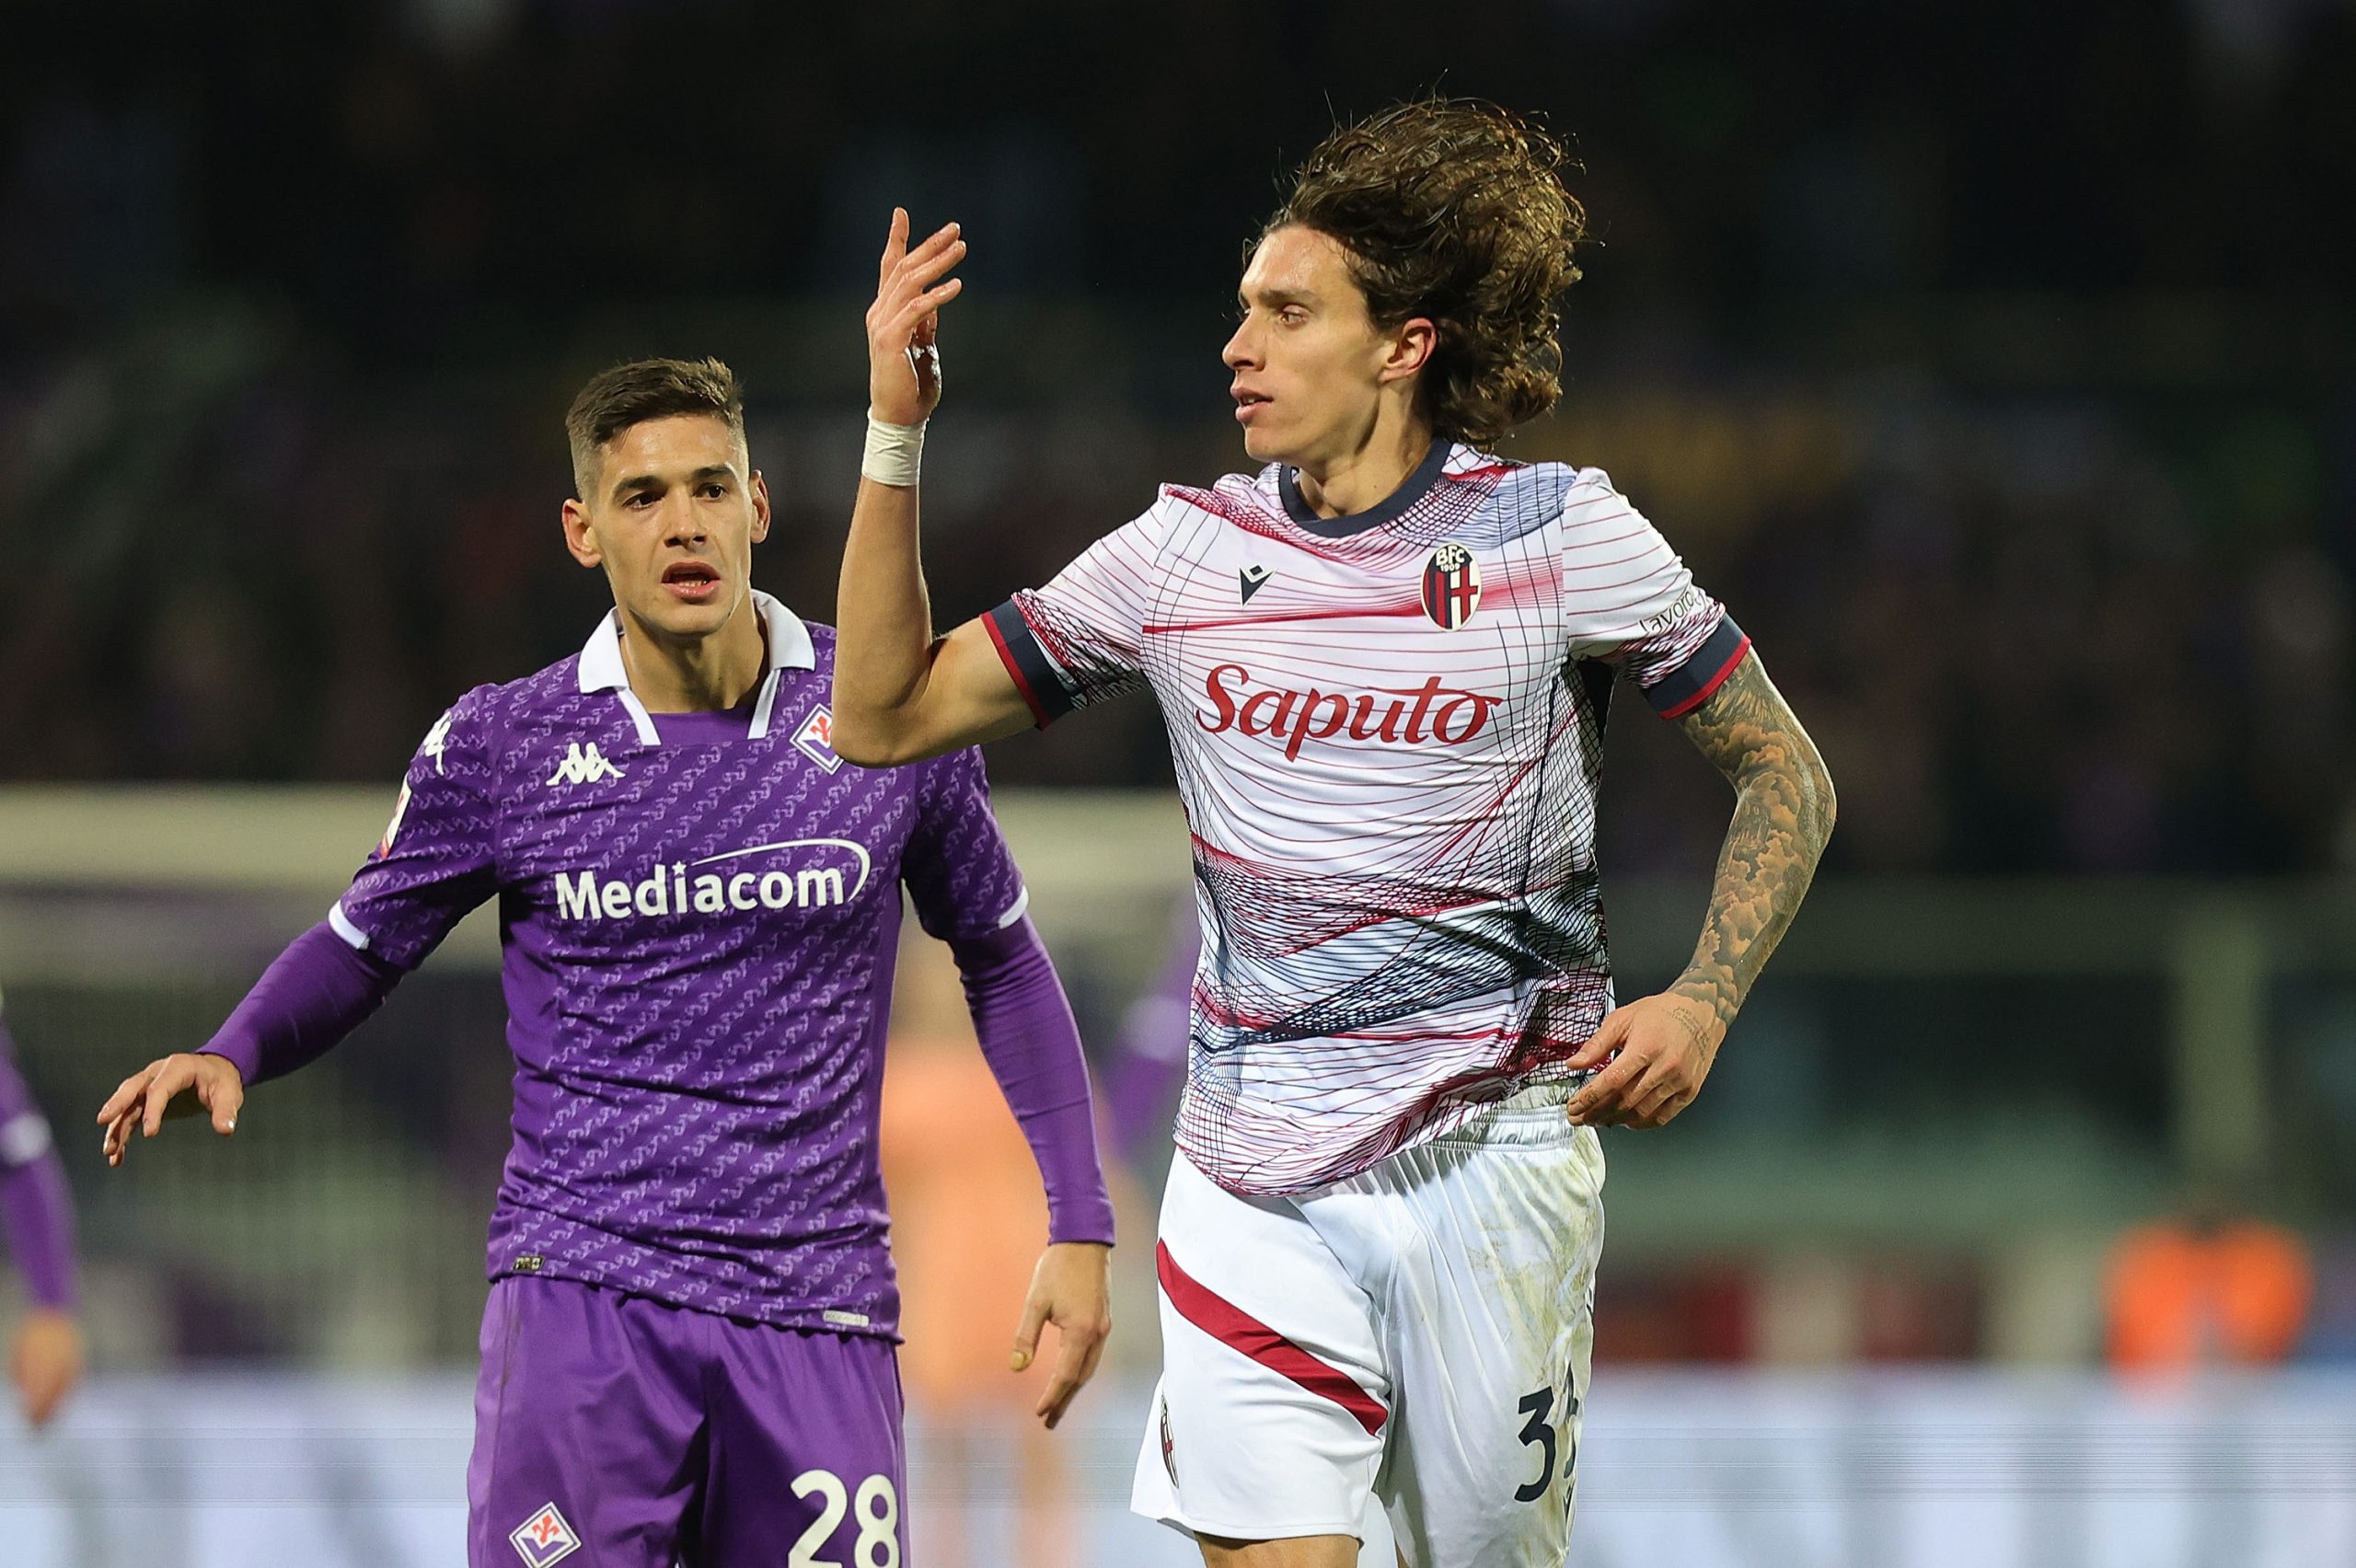 Tottenham target Bologna star Riccardo Calafiori to strengthen defensive depth.